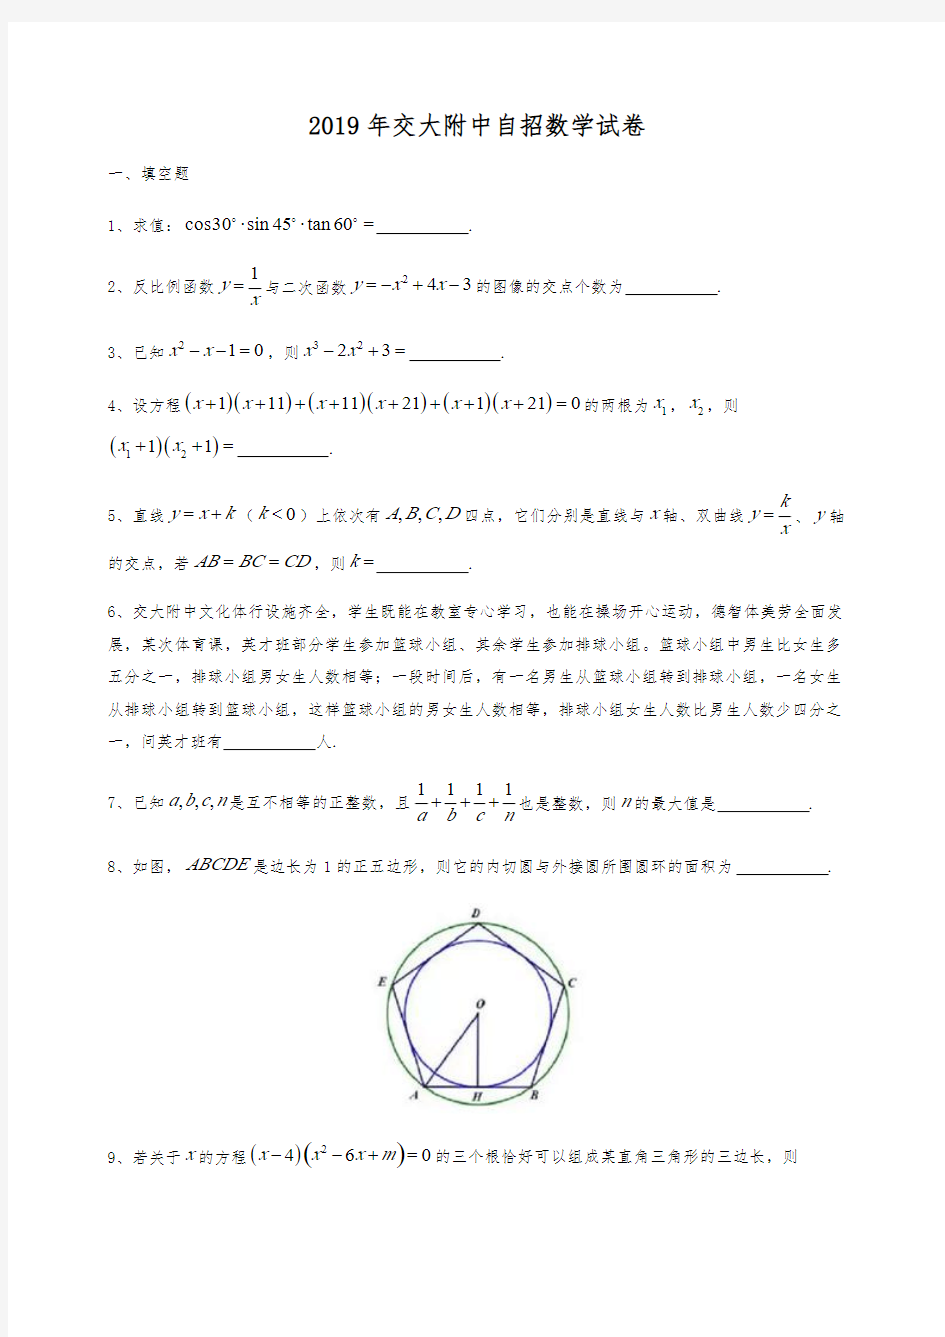 上海交大附中2019年自主招生数学试卷(含答案)